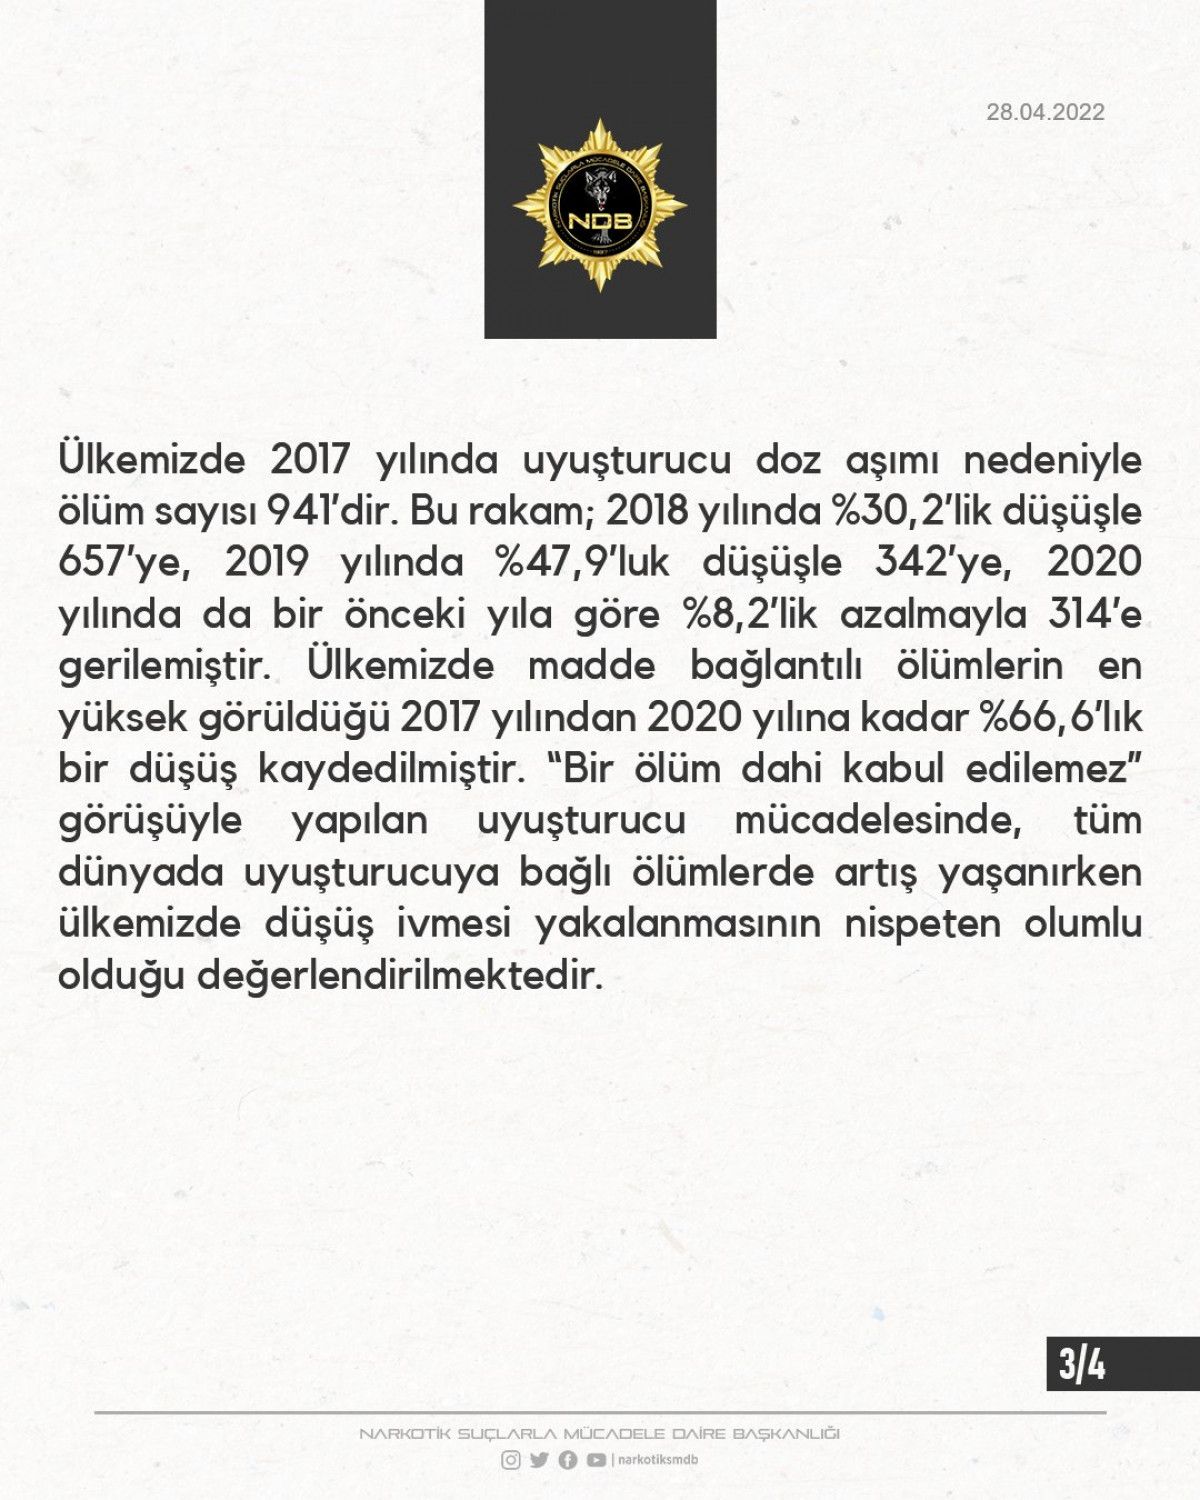 EGM: Türkiye de uyuşturucuya başlama yaşı ortalaması 21.2 dir #3